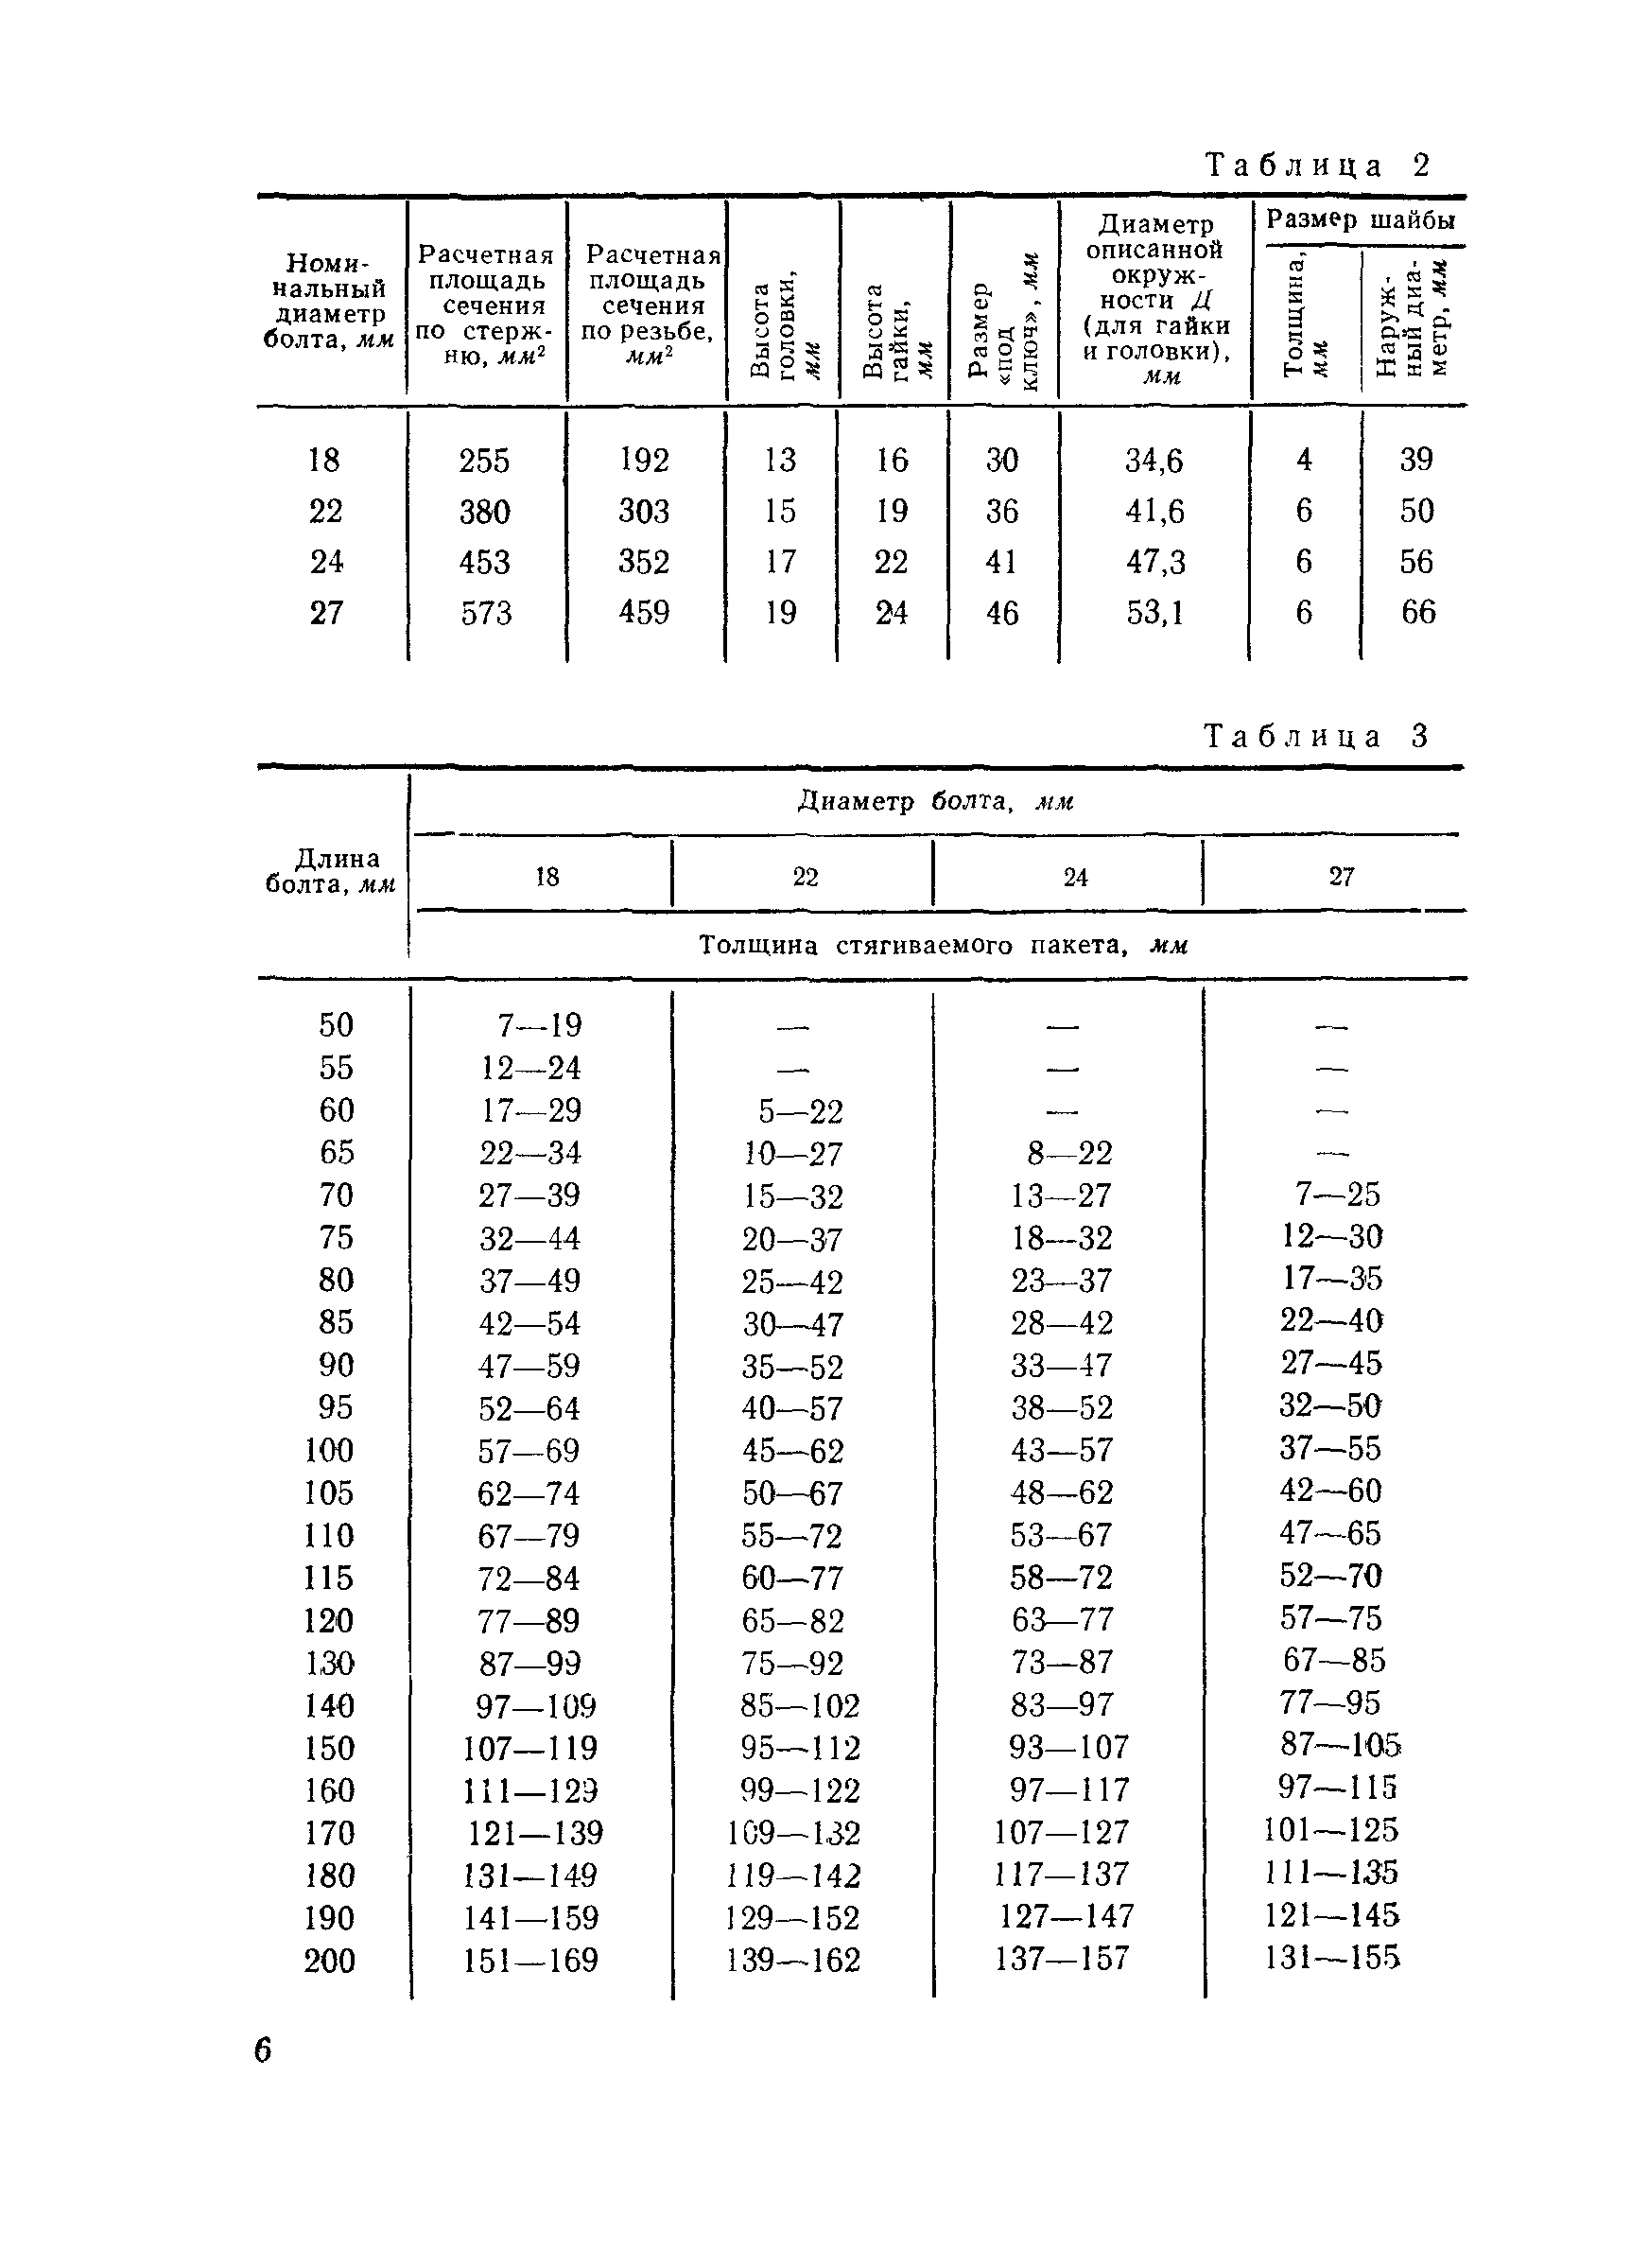 ВСН 144-76